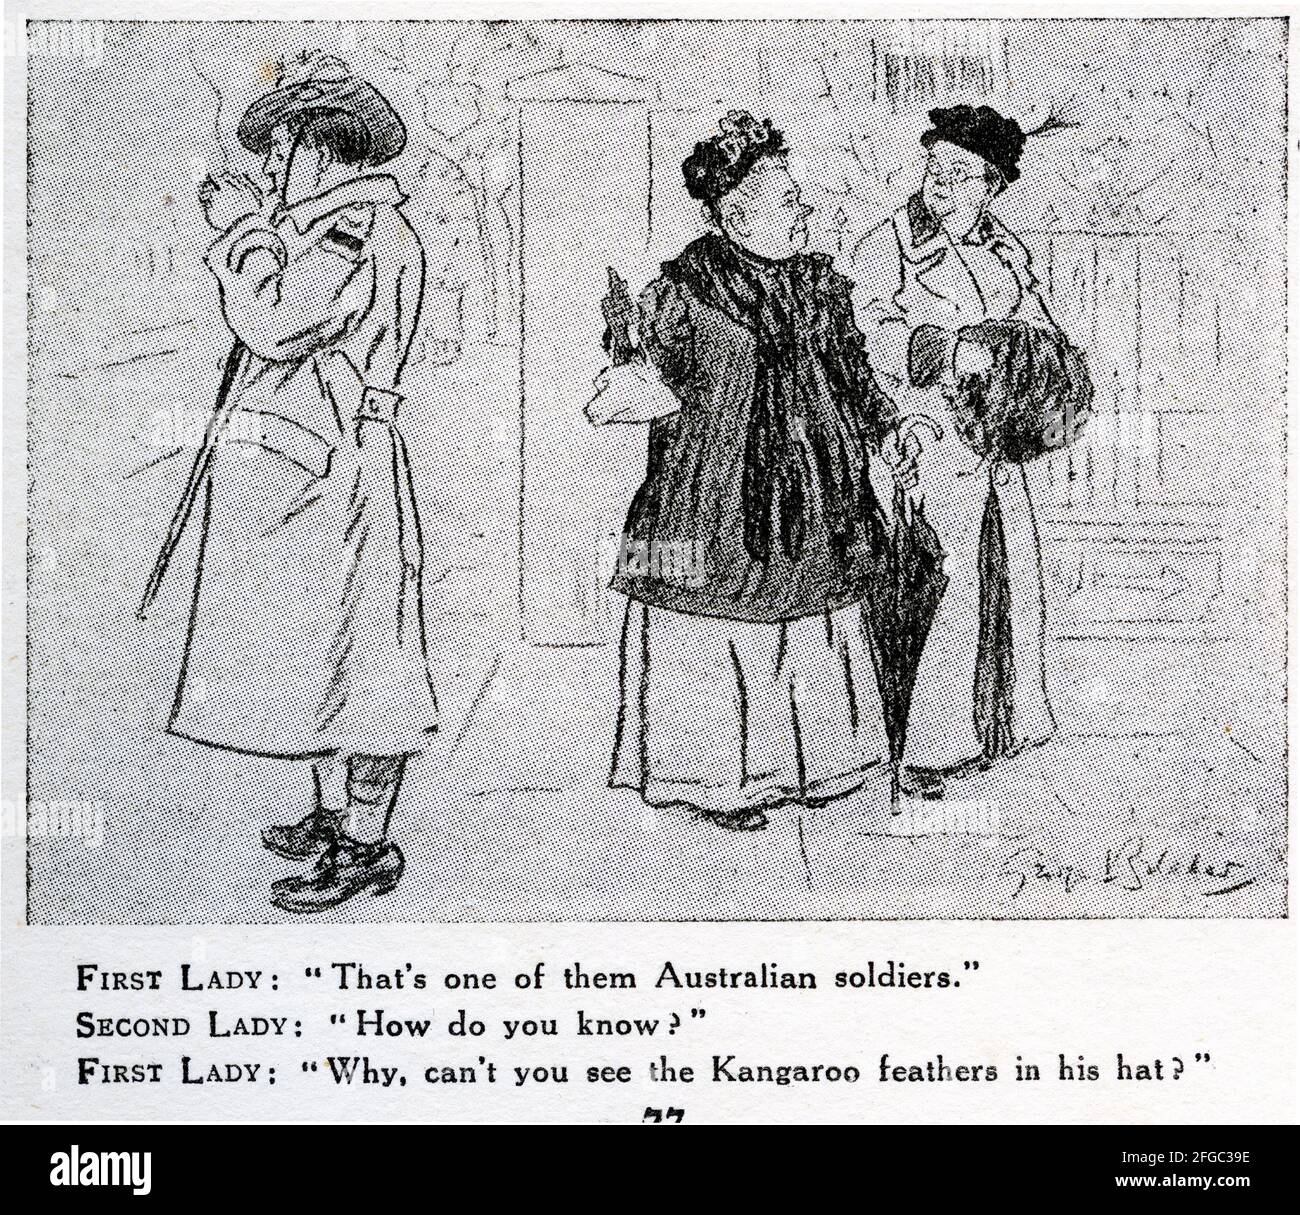 Gravur von zwei Frauen, die einen australischen Soldaten kommentieren, der während des Ersten Weltkriegs Kängurufedern in seinem Hut trug. Aus dem Magazin Punch. Stockfoto